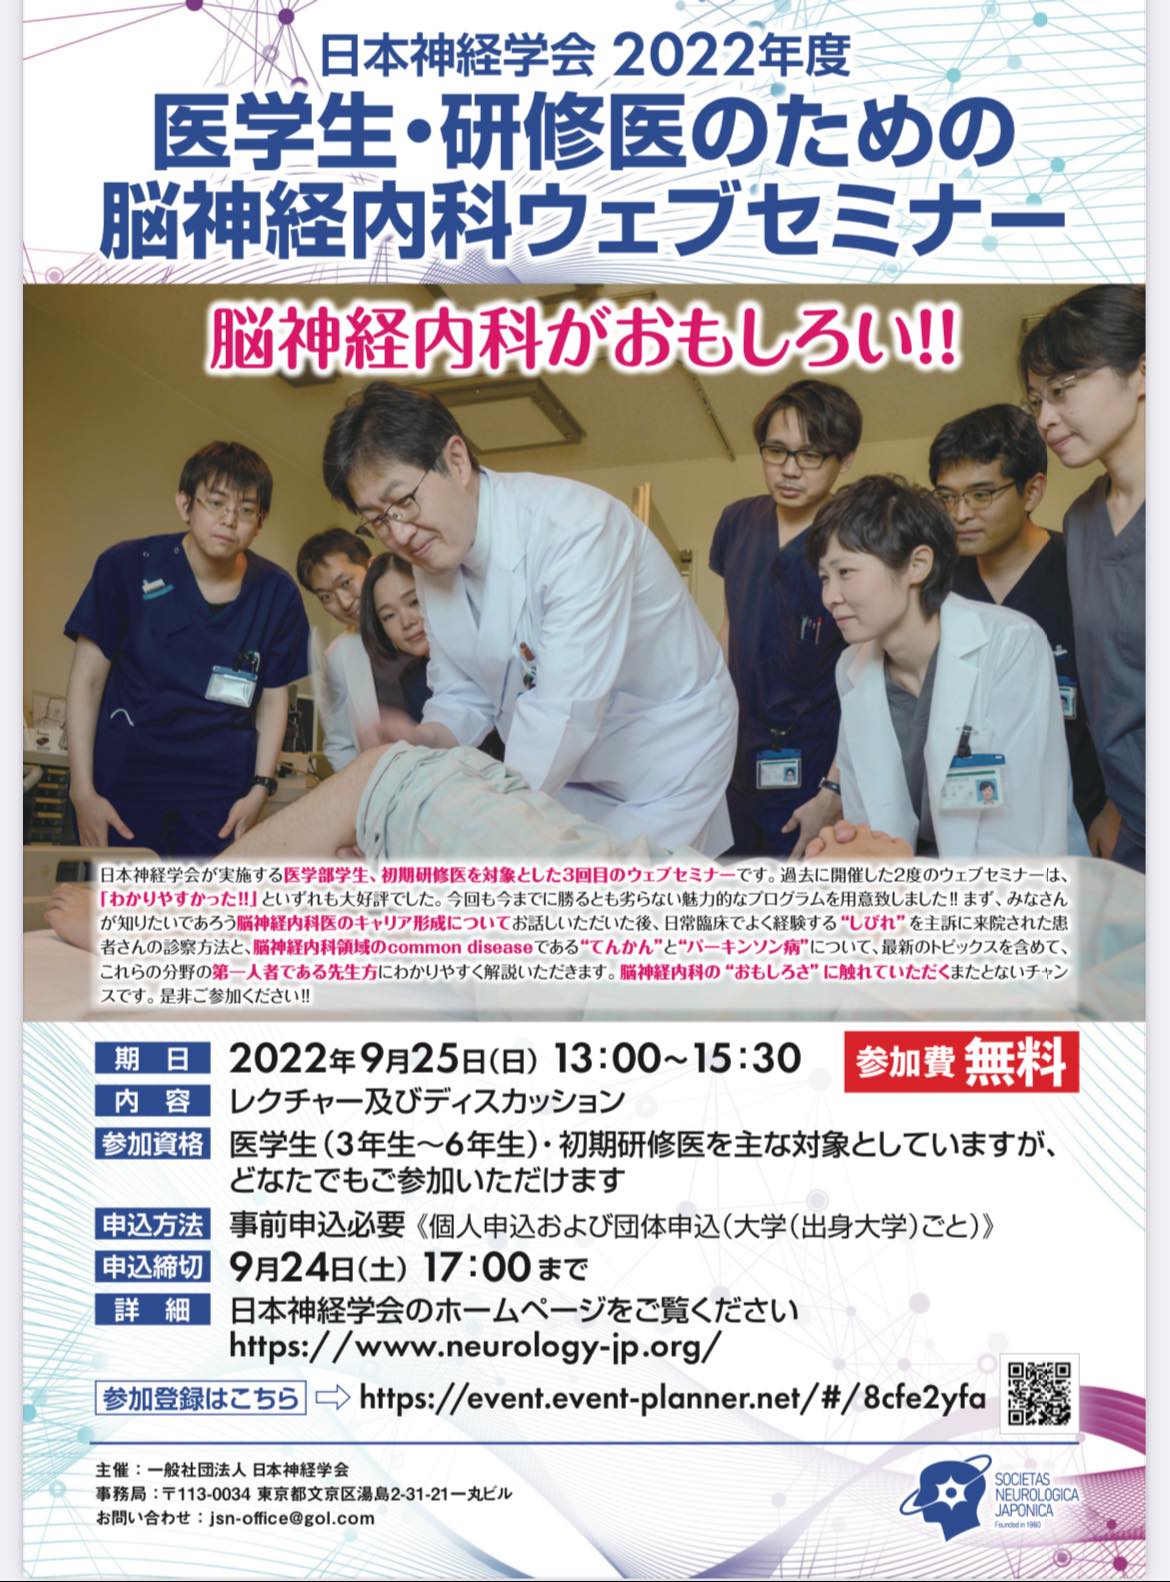 日本神経学会主催 2022年度 医学生・研修医のための脳神経内科Web 